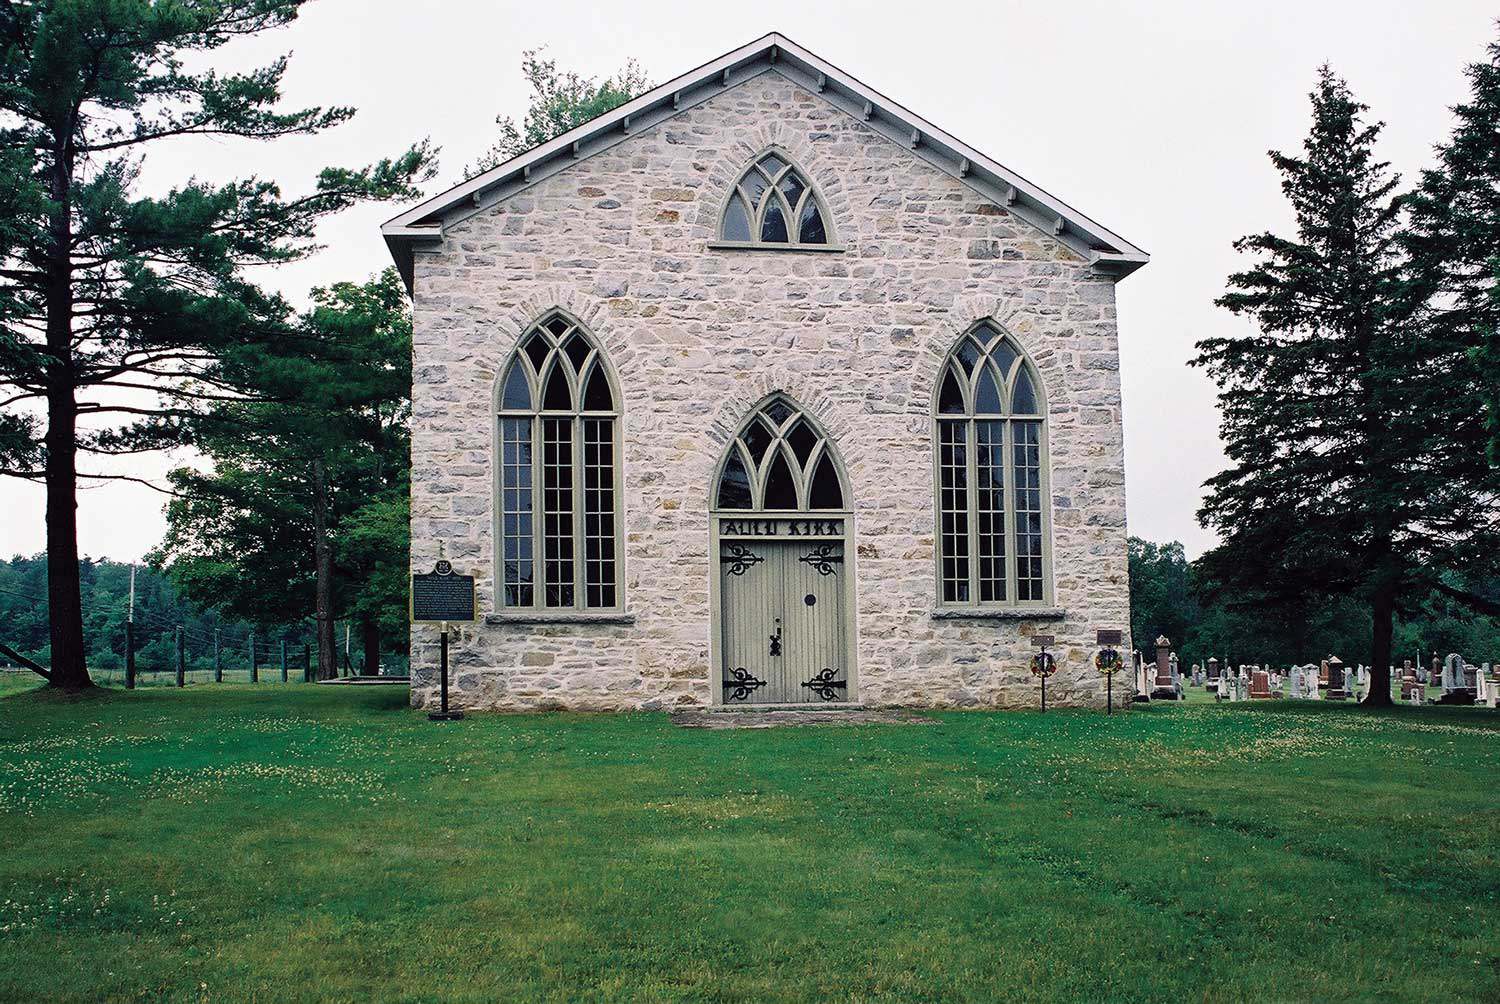 Auld Kirk à Mississippi Mills, bâtie en 1836, constitue l’un des premiers exemples d’une église presbytérienne érigée en Ontario